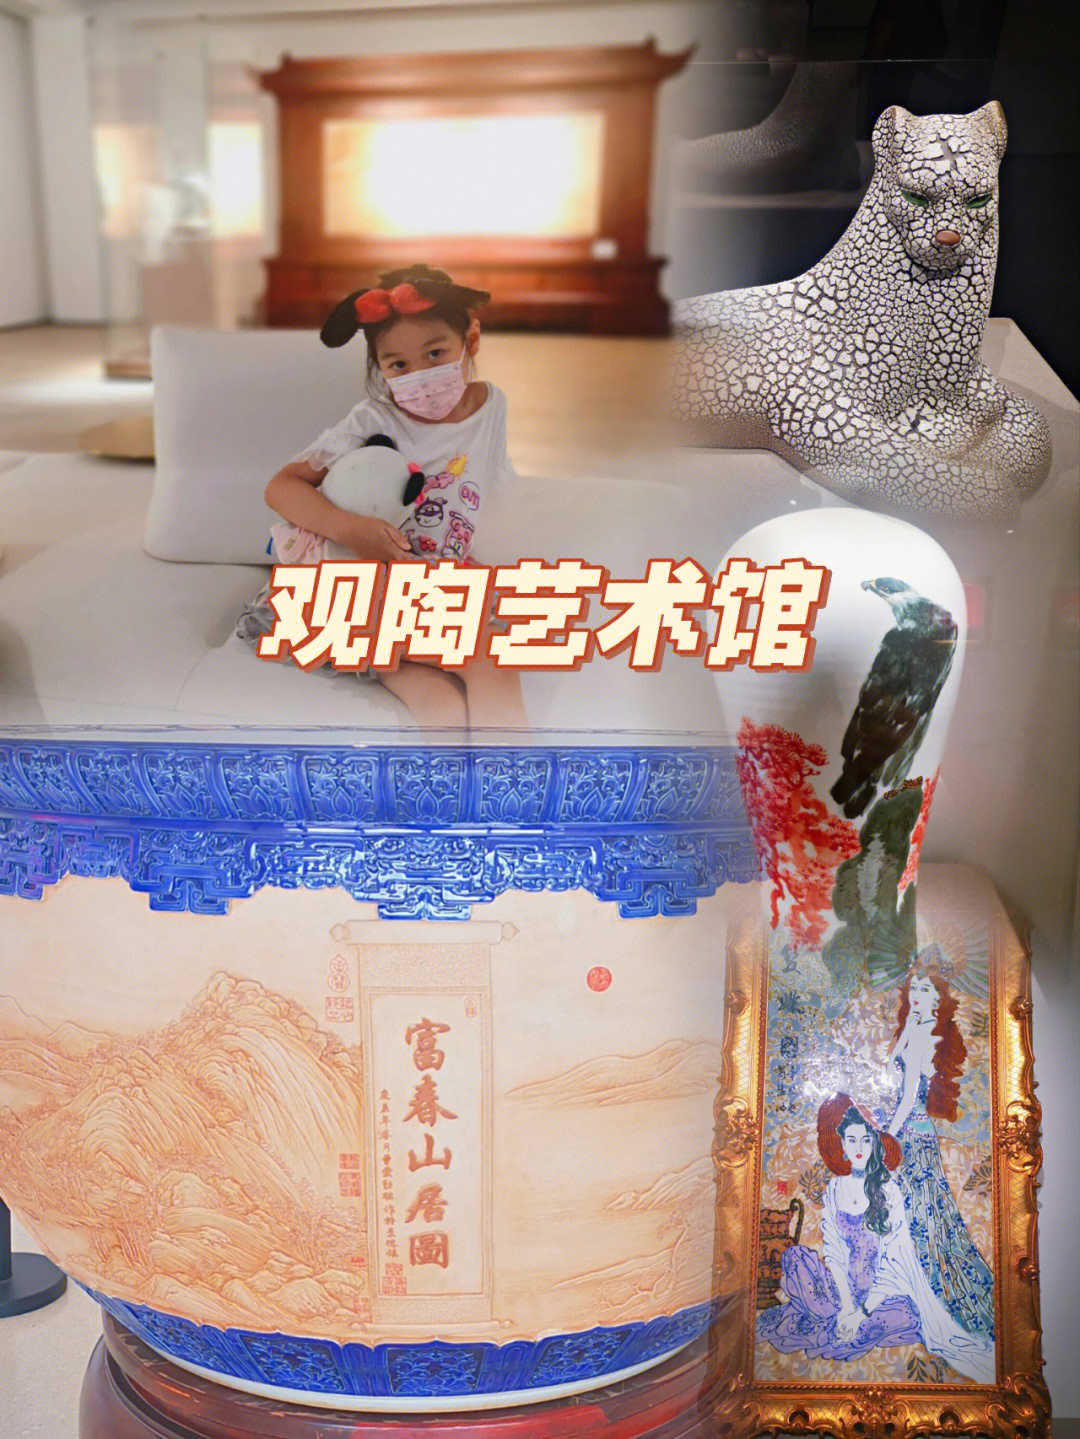 观陶艺术馆奇妙之旅了解中国陶瓷简史